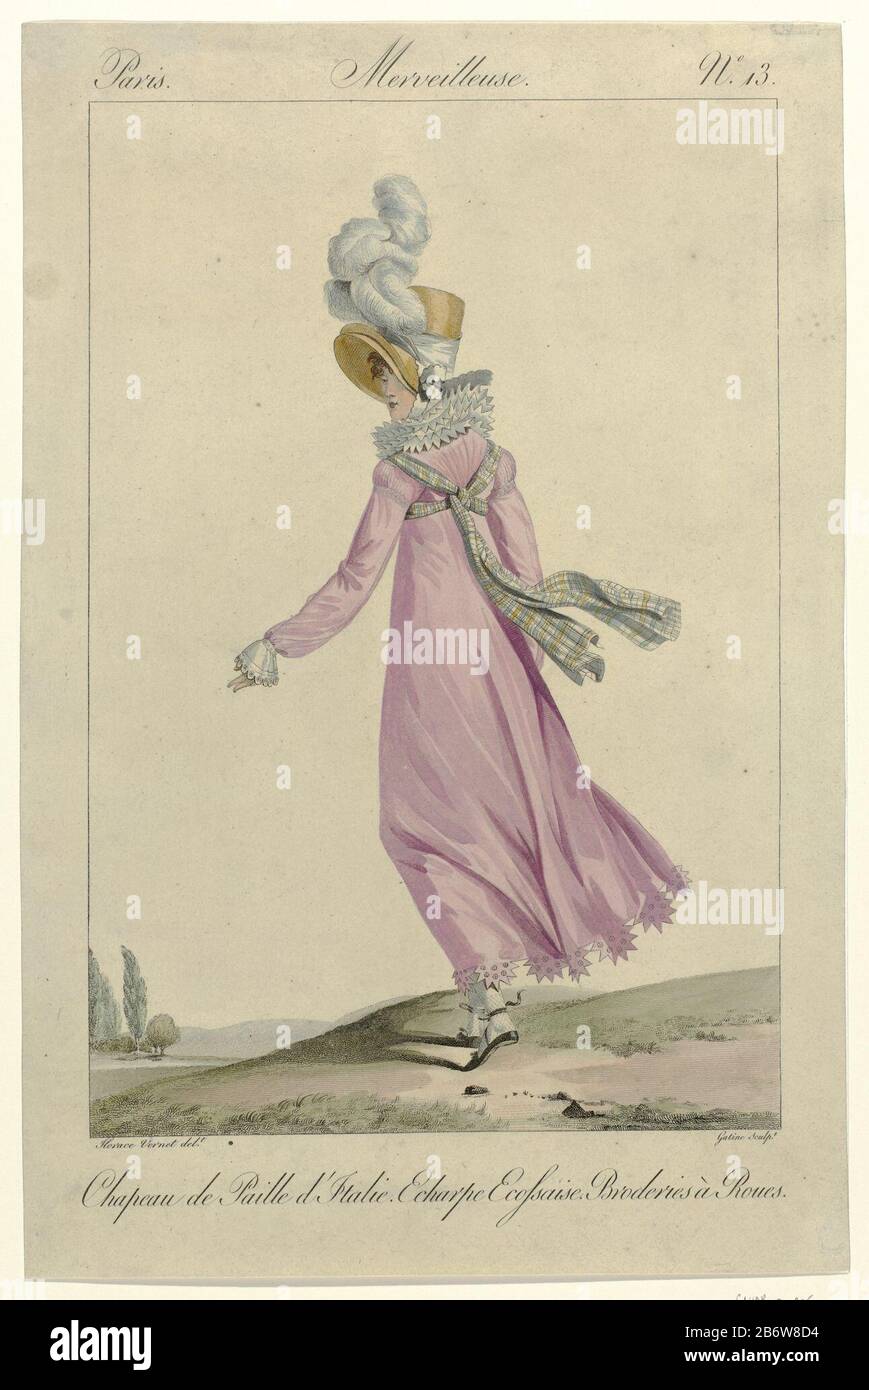 Incroyables et Merveilleuses, 1812, Merveilleuse, no 13 Chapeau de Paille  d'Itali () 'Merveilleuse ', visto desde la espalda, con la cabeza de un  sombrero' paille d'Italie. Tartan bufanda anudada en la espalda.